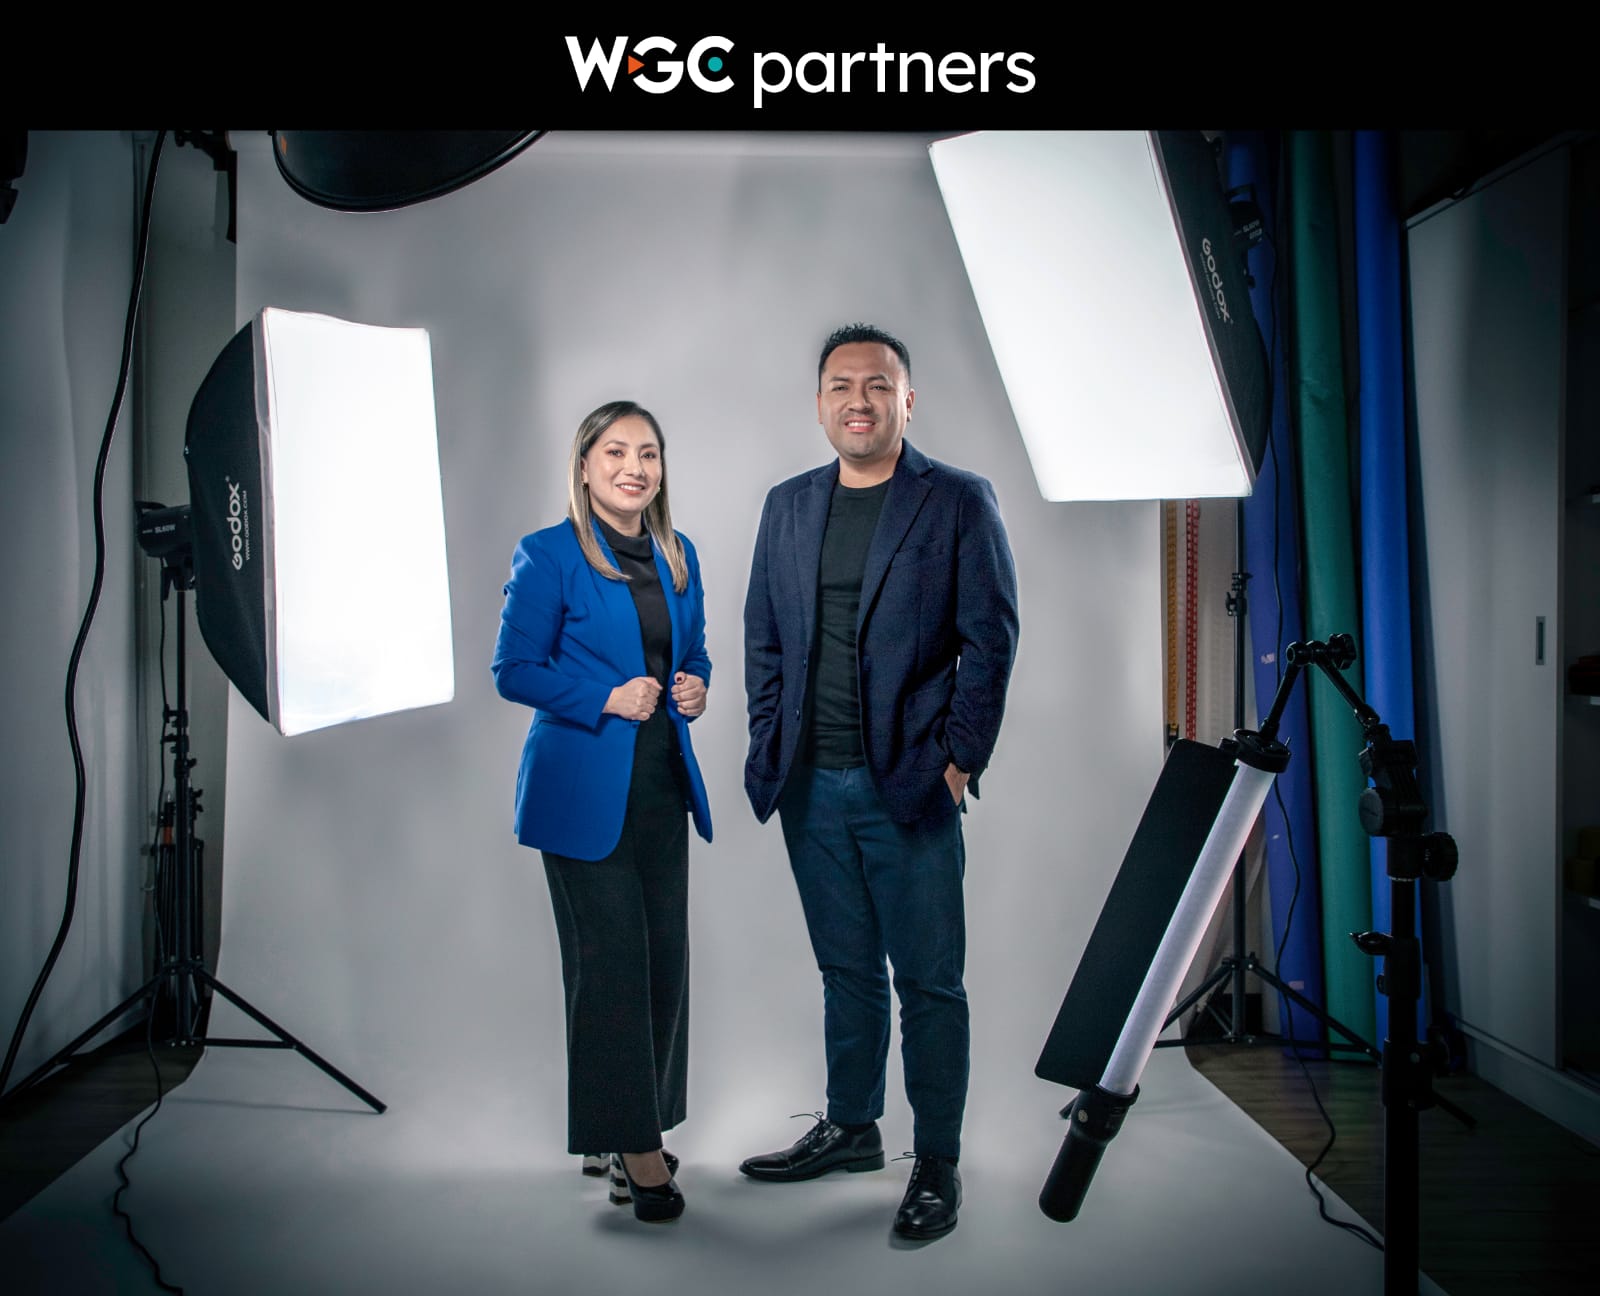 WGC Partners refuerza su presencia en el mercado publicitario con Voltaje: productora de eventos y activaciones BTL